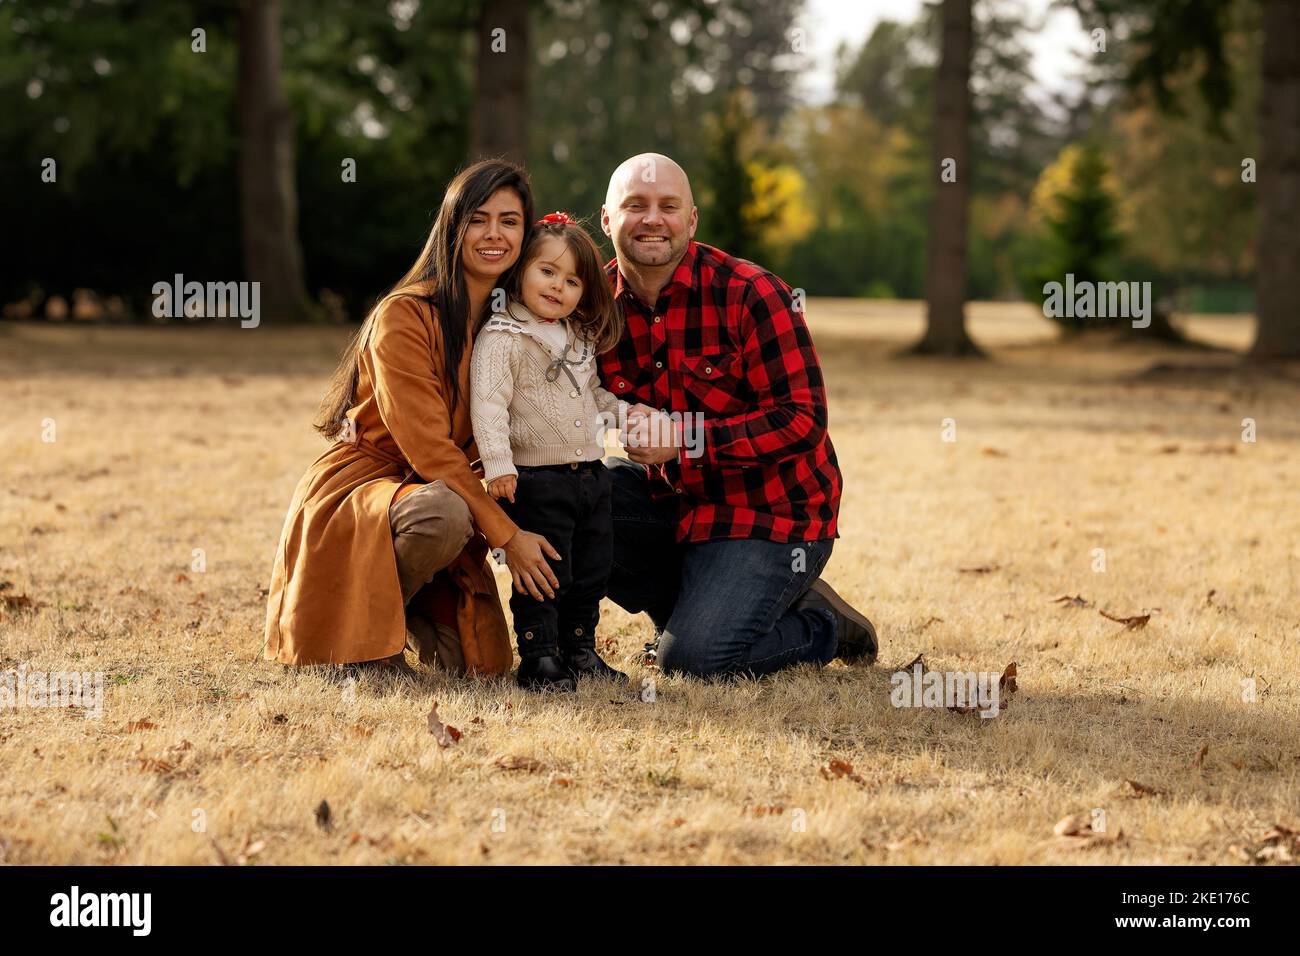 Ein liebevolles multiethnisches Paar, ein kaukasischer Mann und eine lateinische Frau Mitte 30s, die Outdoor-Aktivitäten und wertvolle Zeit mit der Familie genießen und Wi spielen Stockfoto